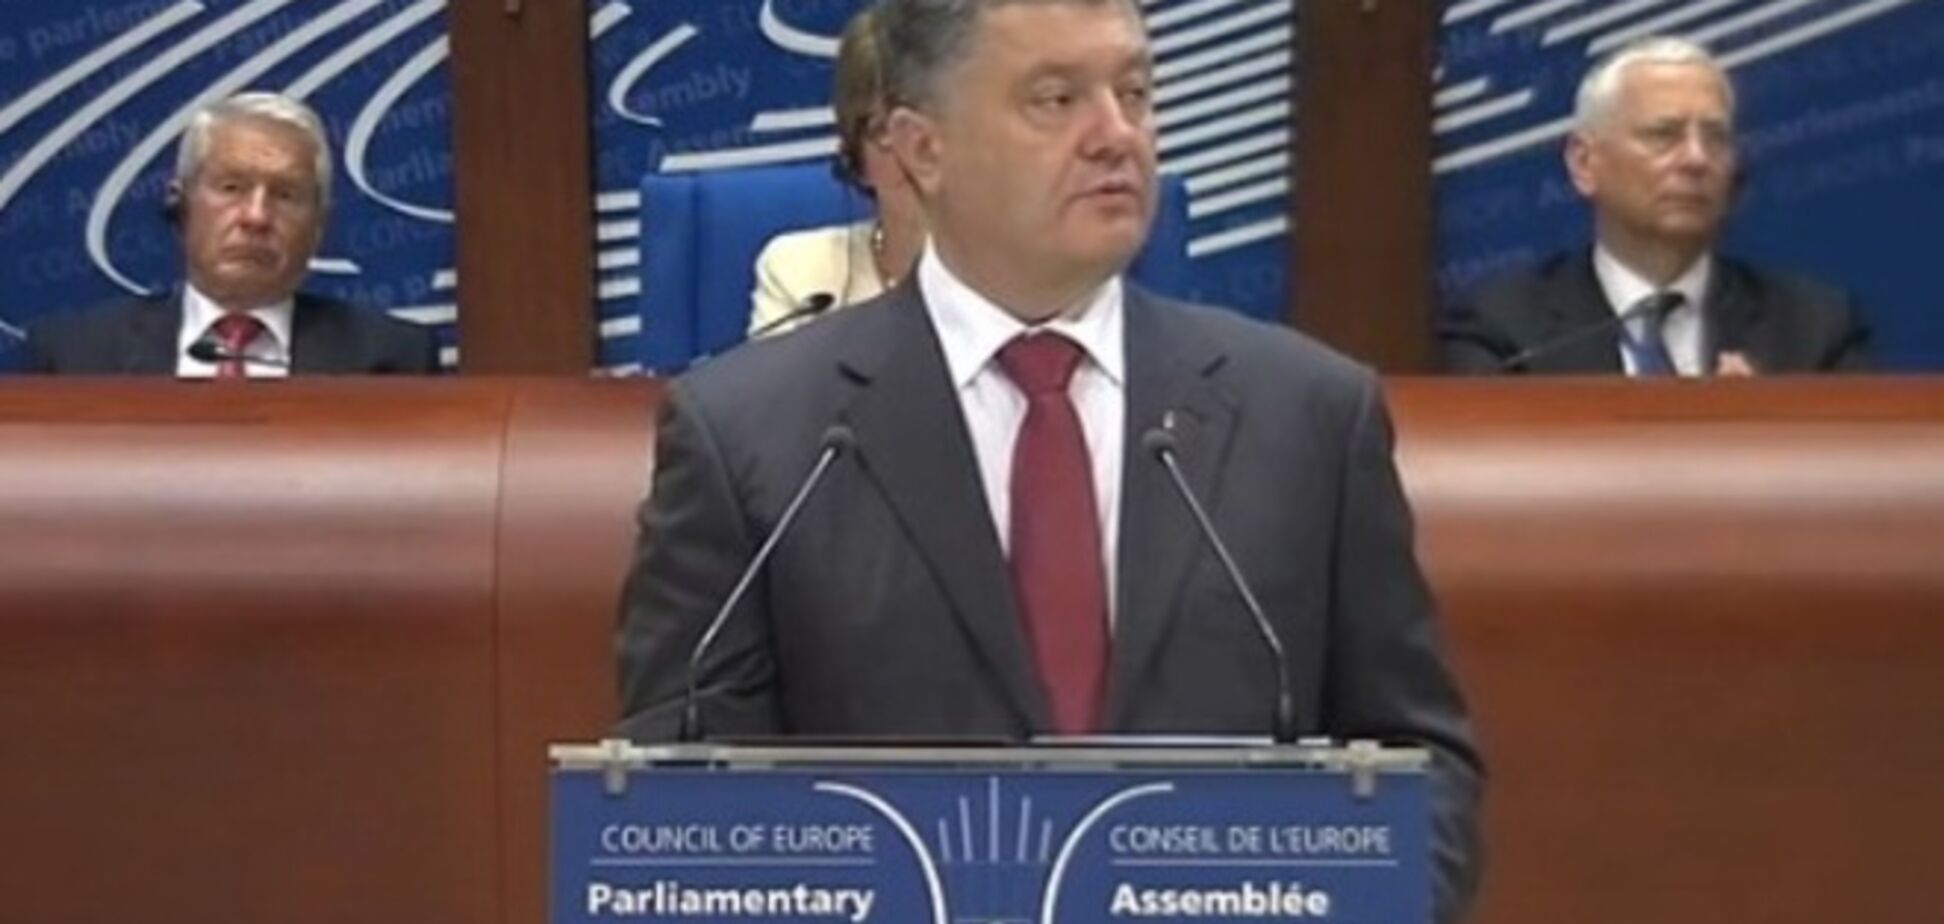 ПАРЄ розглядає ситуацію в Україні: виступає Порошенко. Пряма трансляція